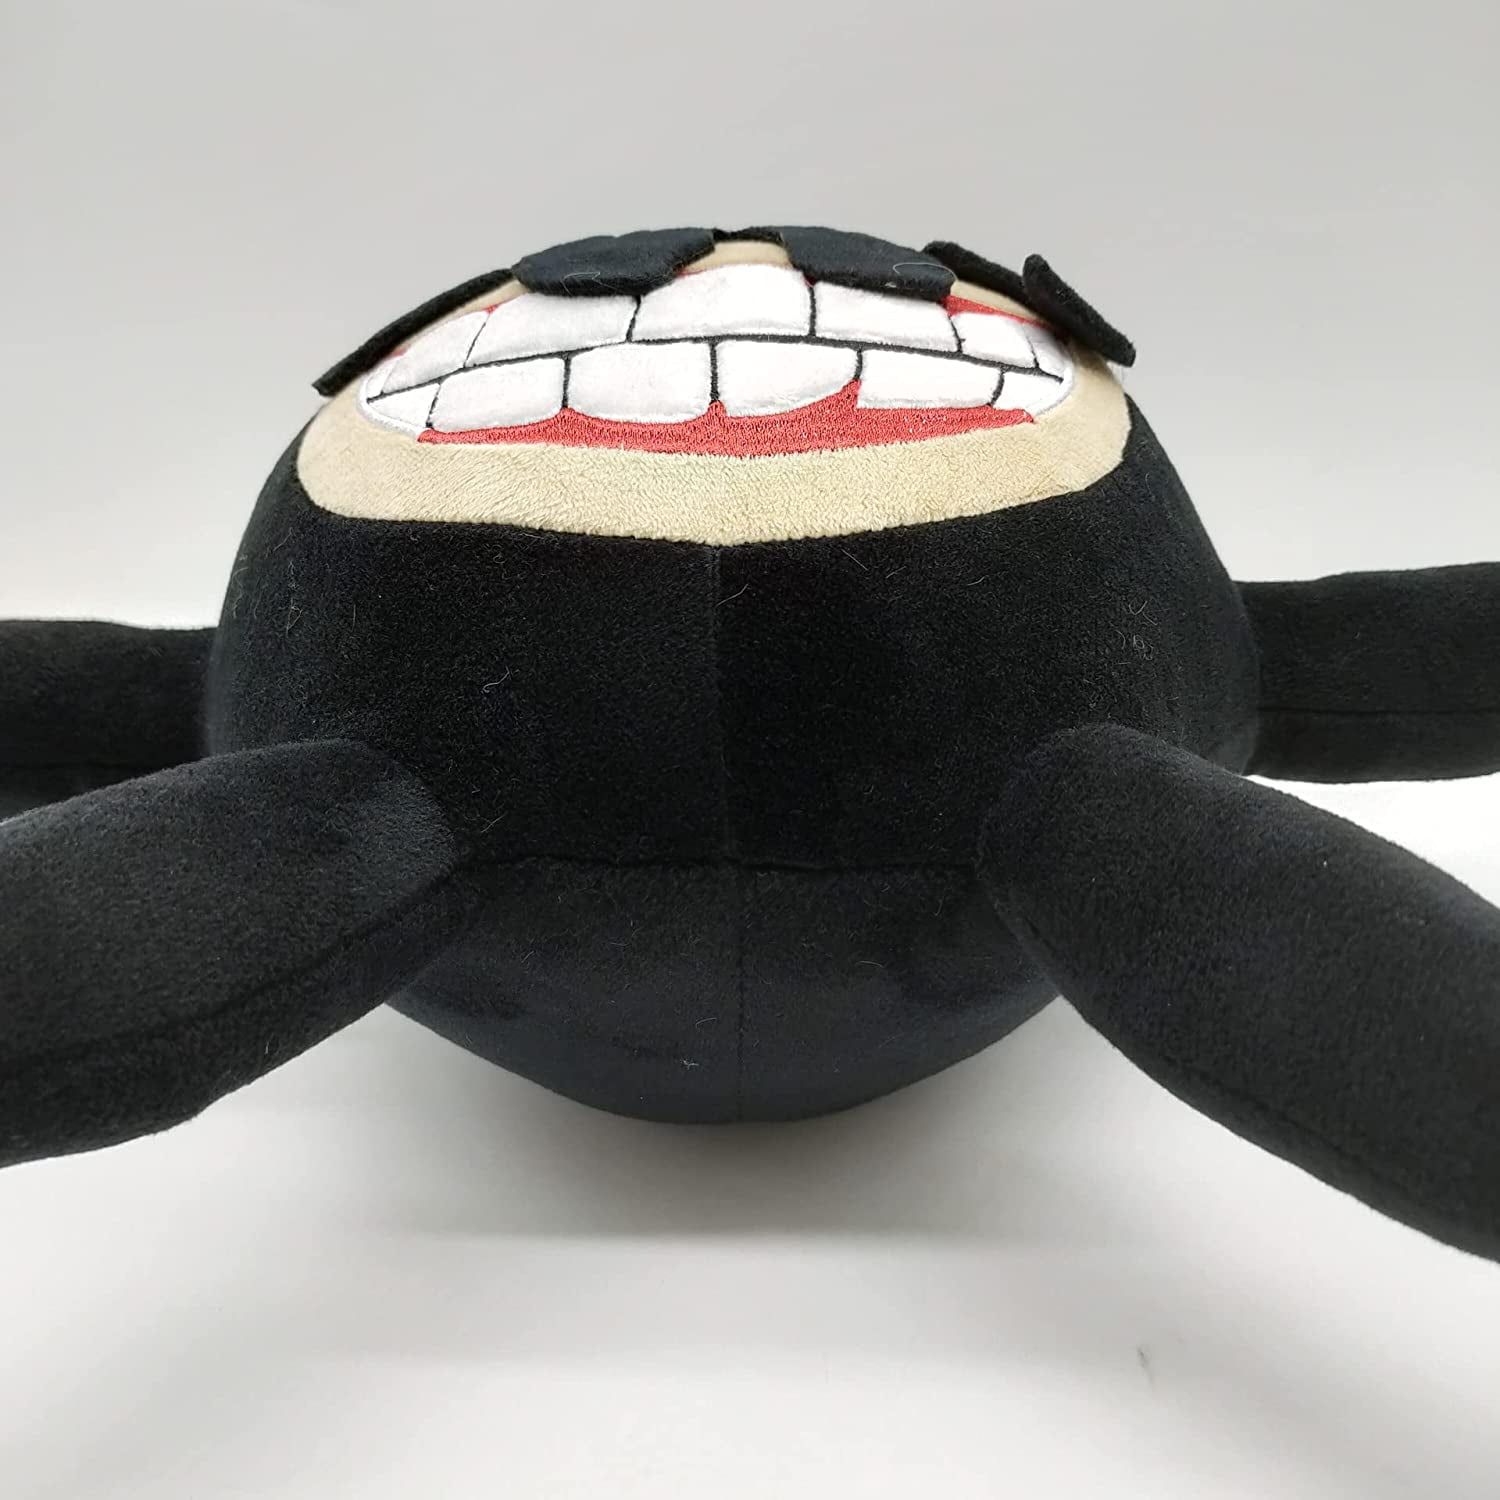 New Horror Game Doors Plush Doll Screech Monster Action Figur Doll Toy Kids  Gift